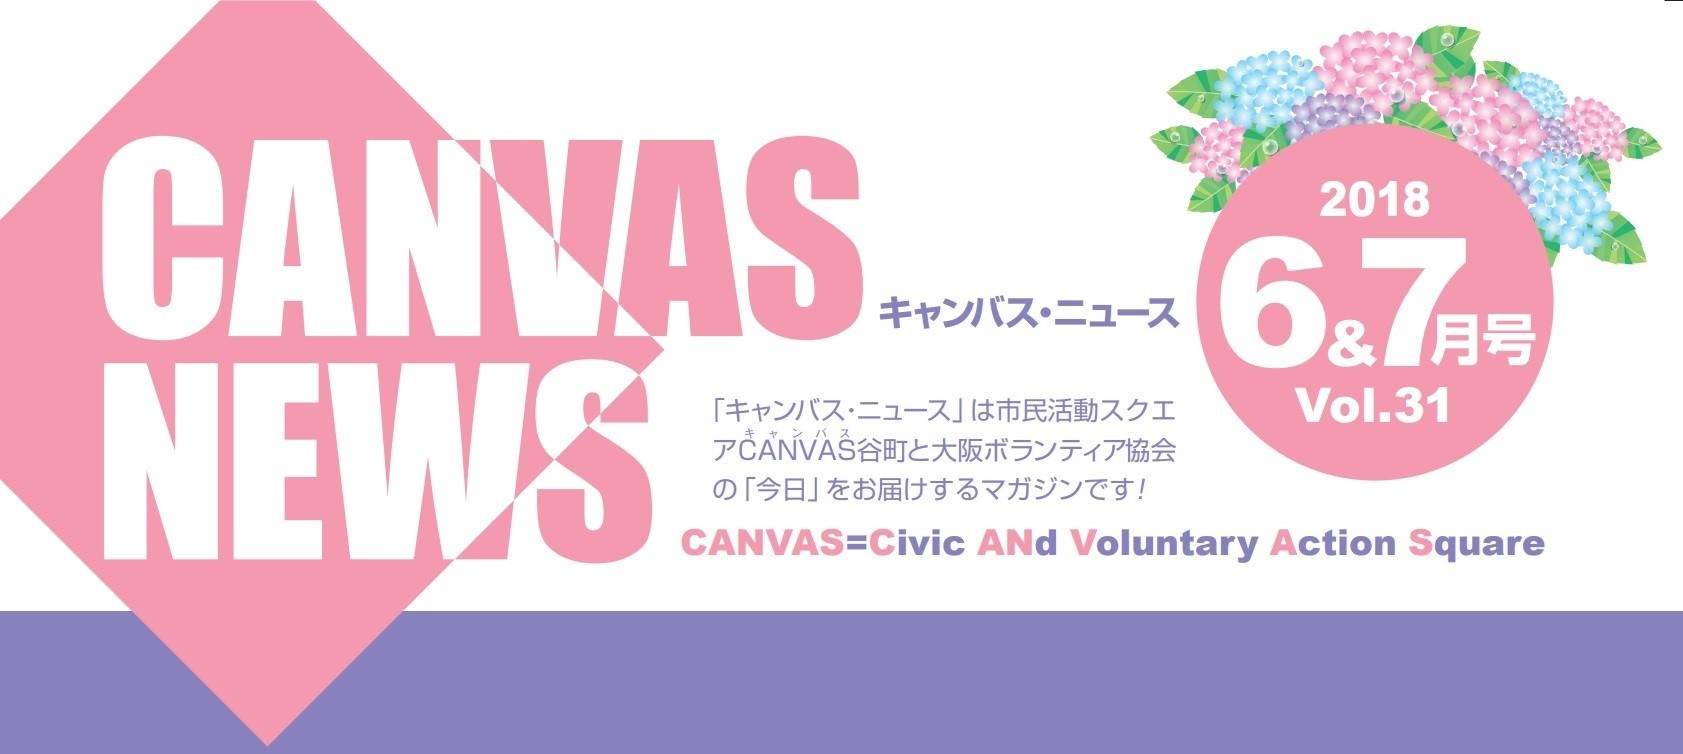 【CANVAS NEWS】2018年6・7月号